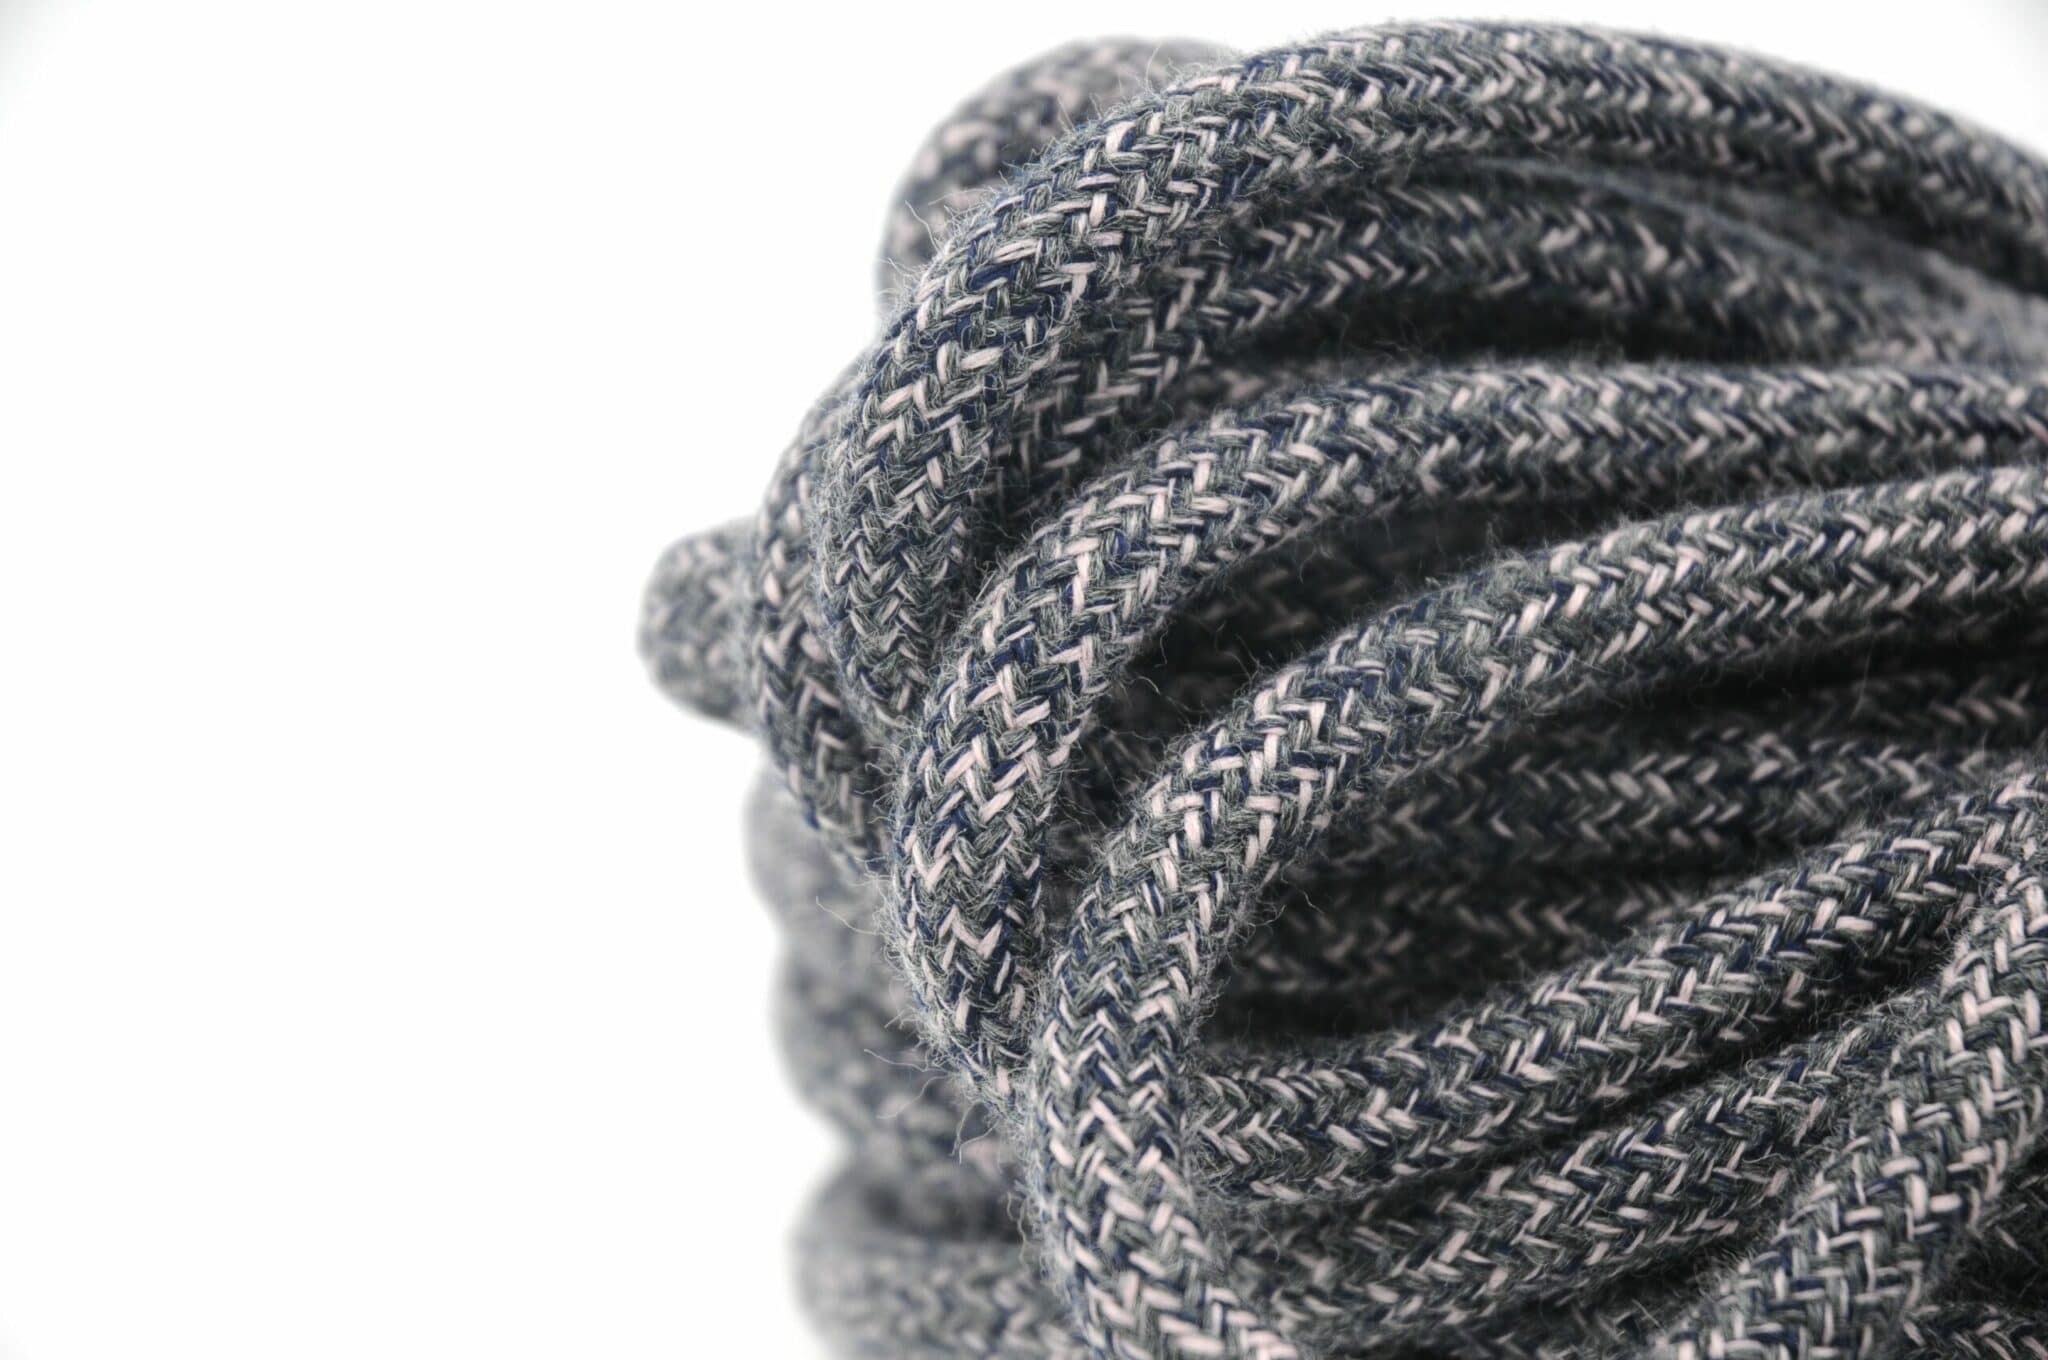 corde en 100% laine pour tabouret tabcord